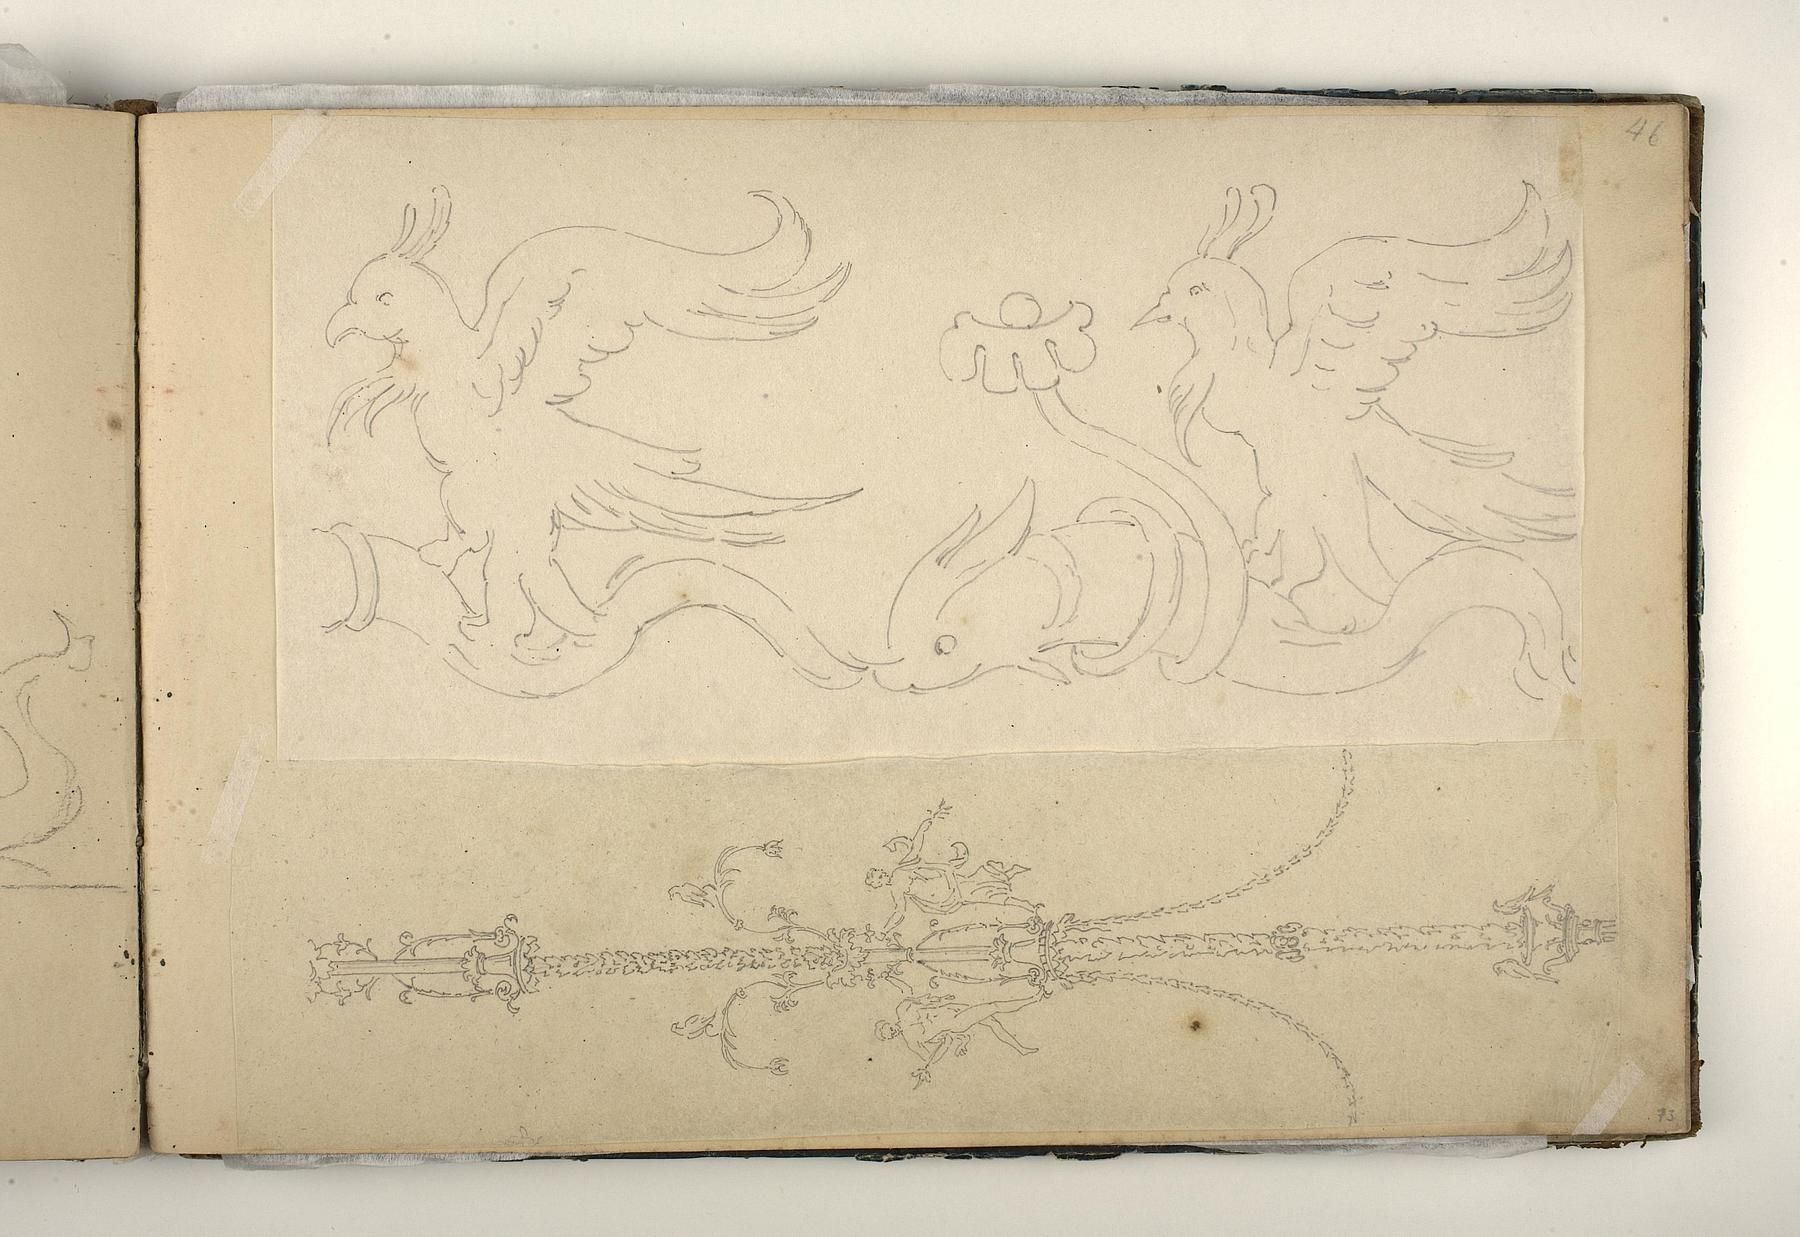 Fugle ridende på ryggen af delfiner. Vægdekoration i pompeijansk stil med to dansende figurer, D1827,73